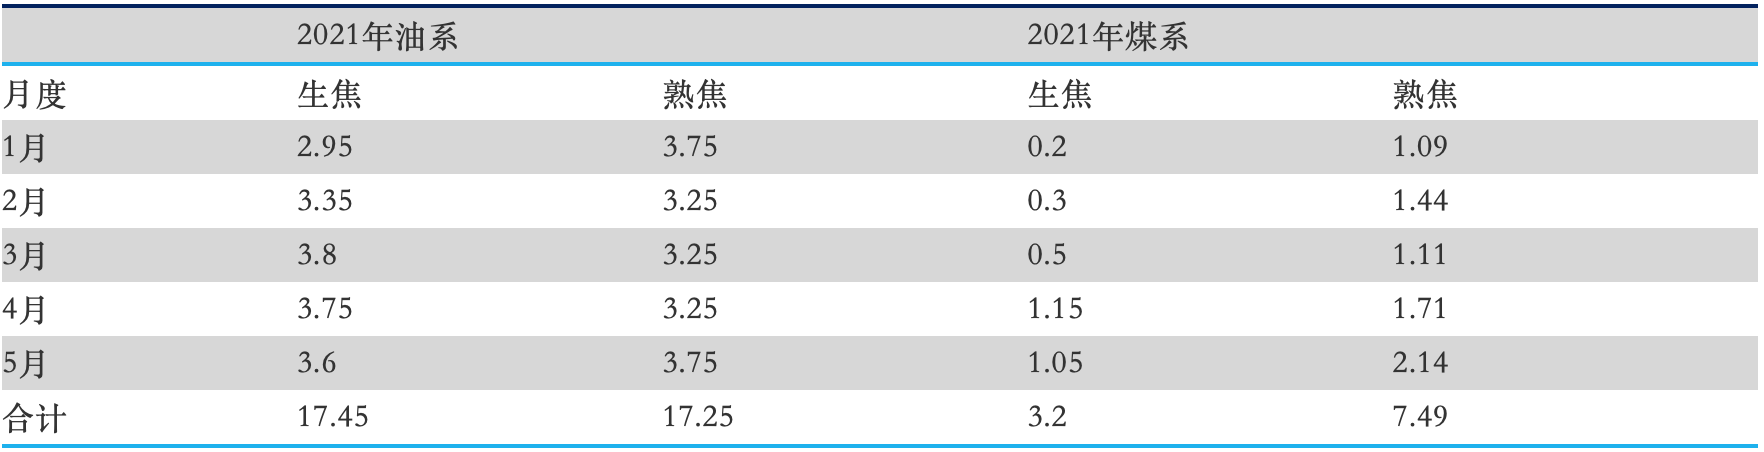 中国针状焦市场2021上半年总结